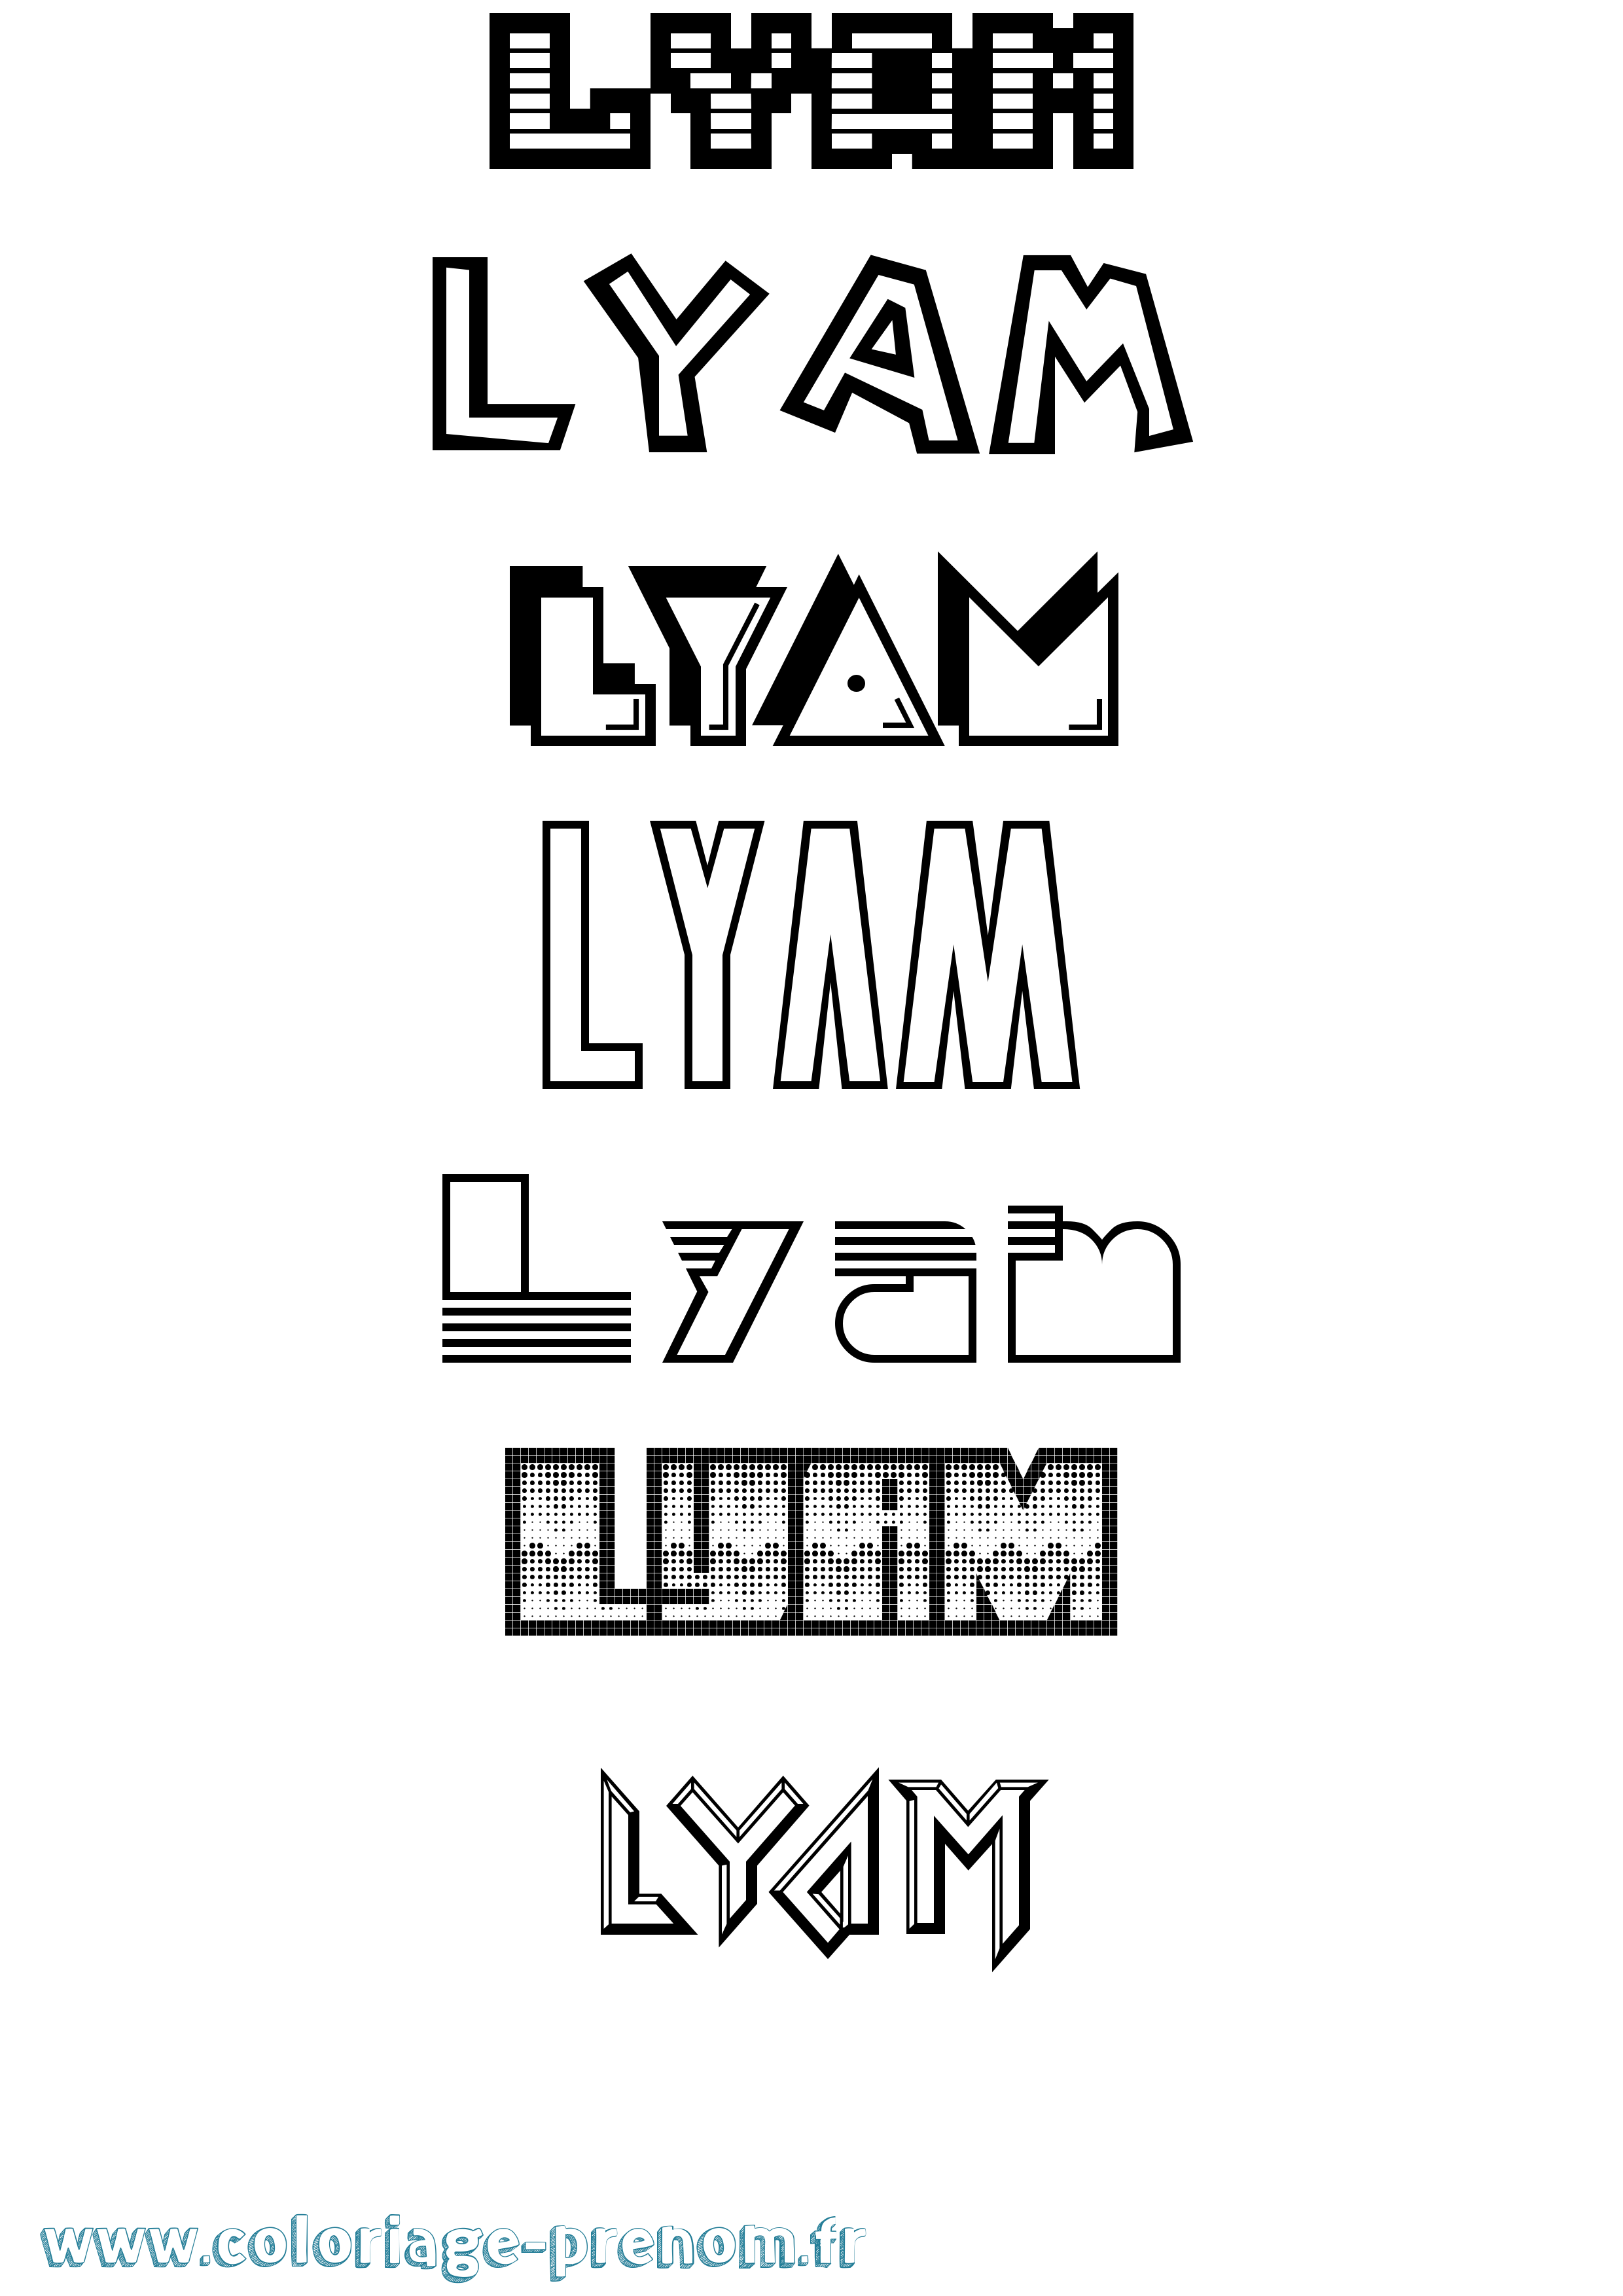 Coloriage prénom Lyam Jeux Vidéos